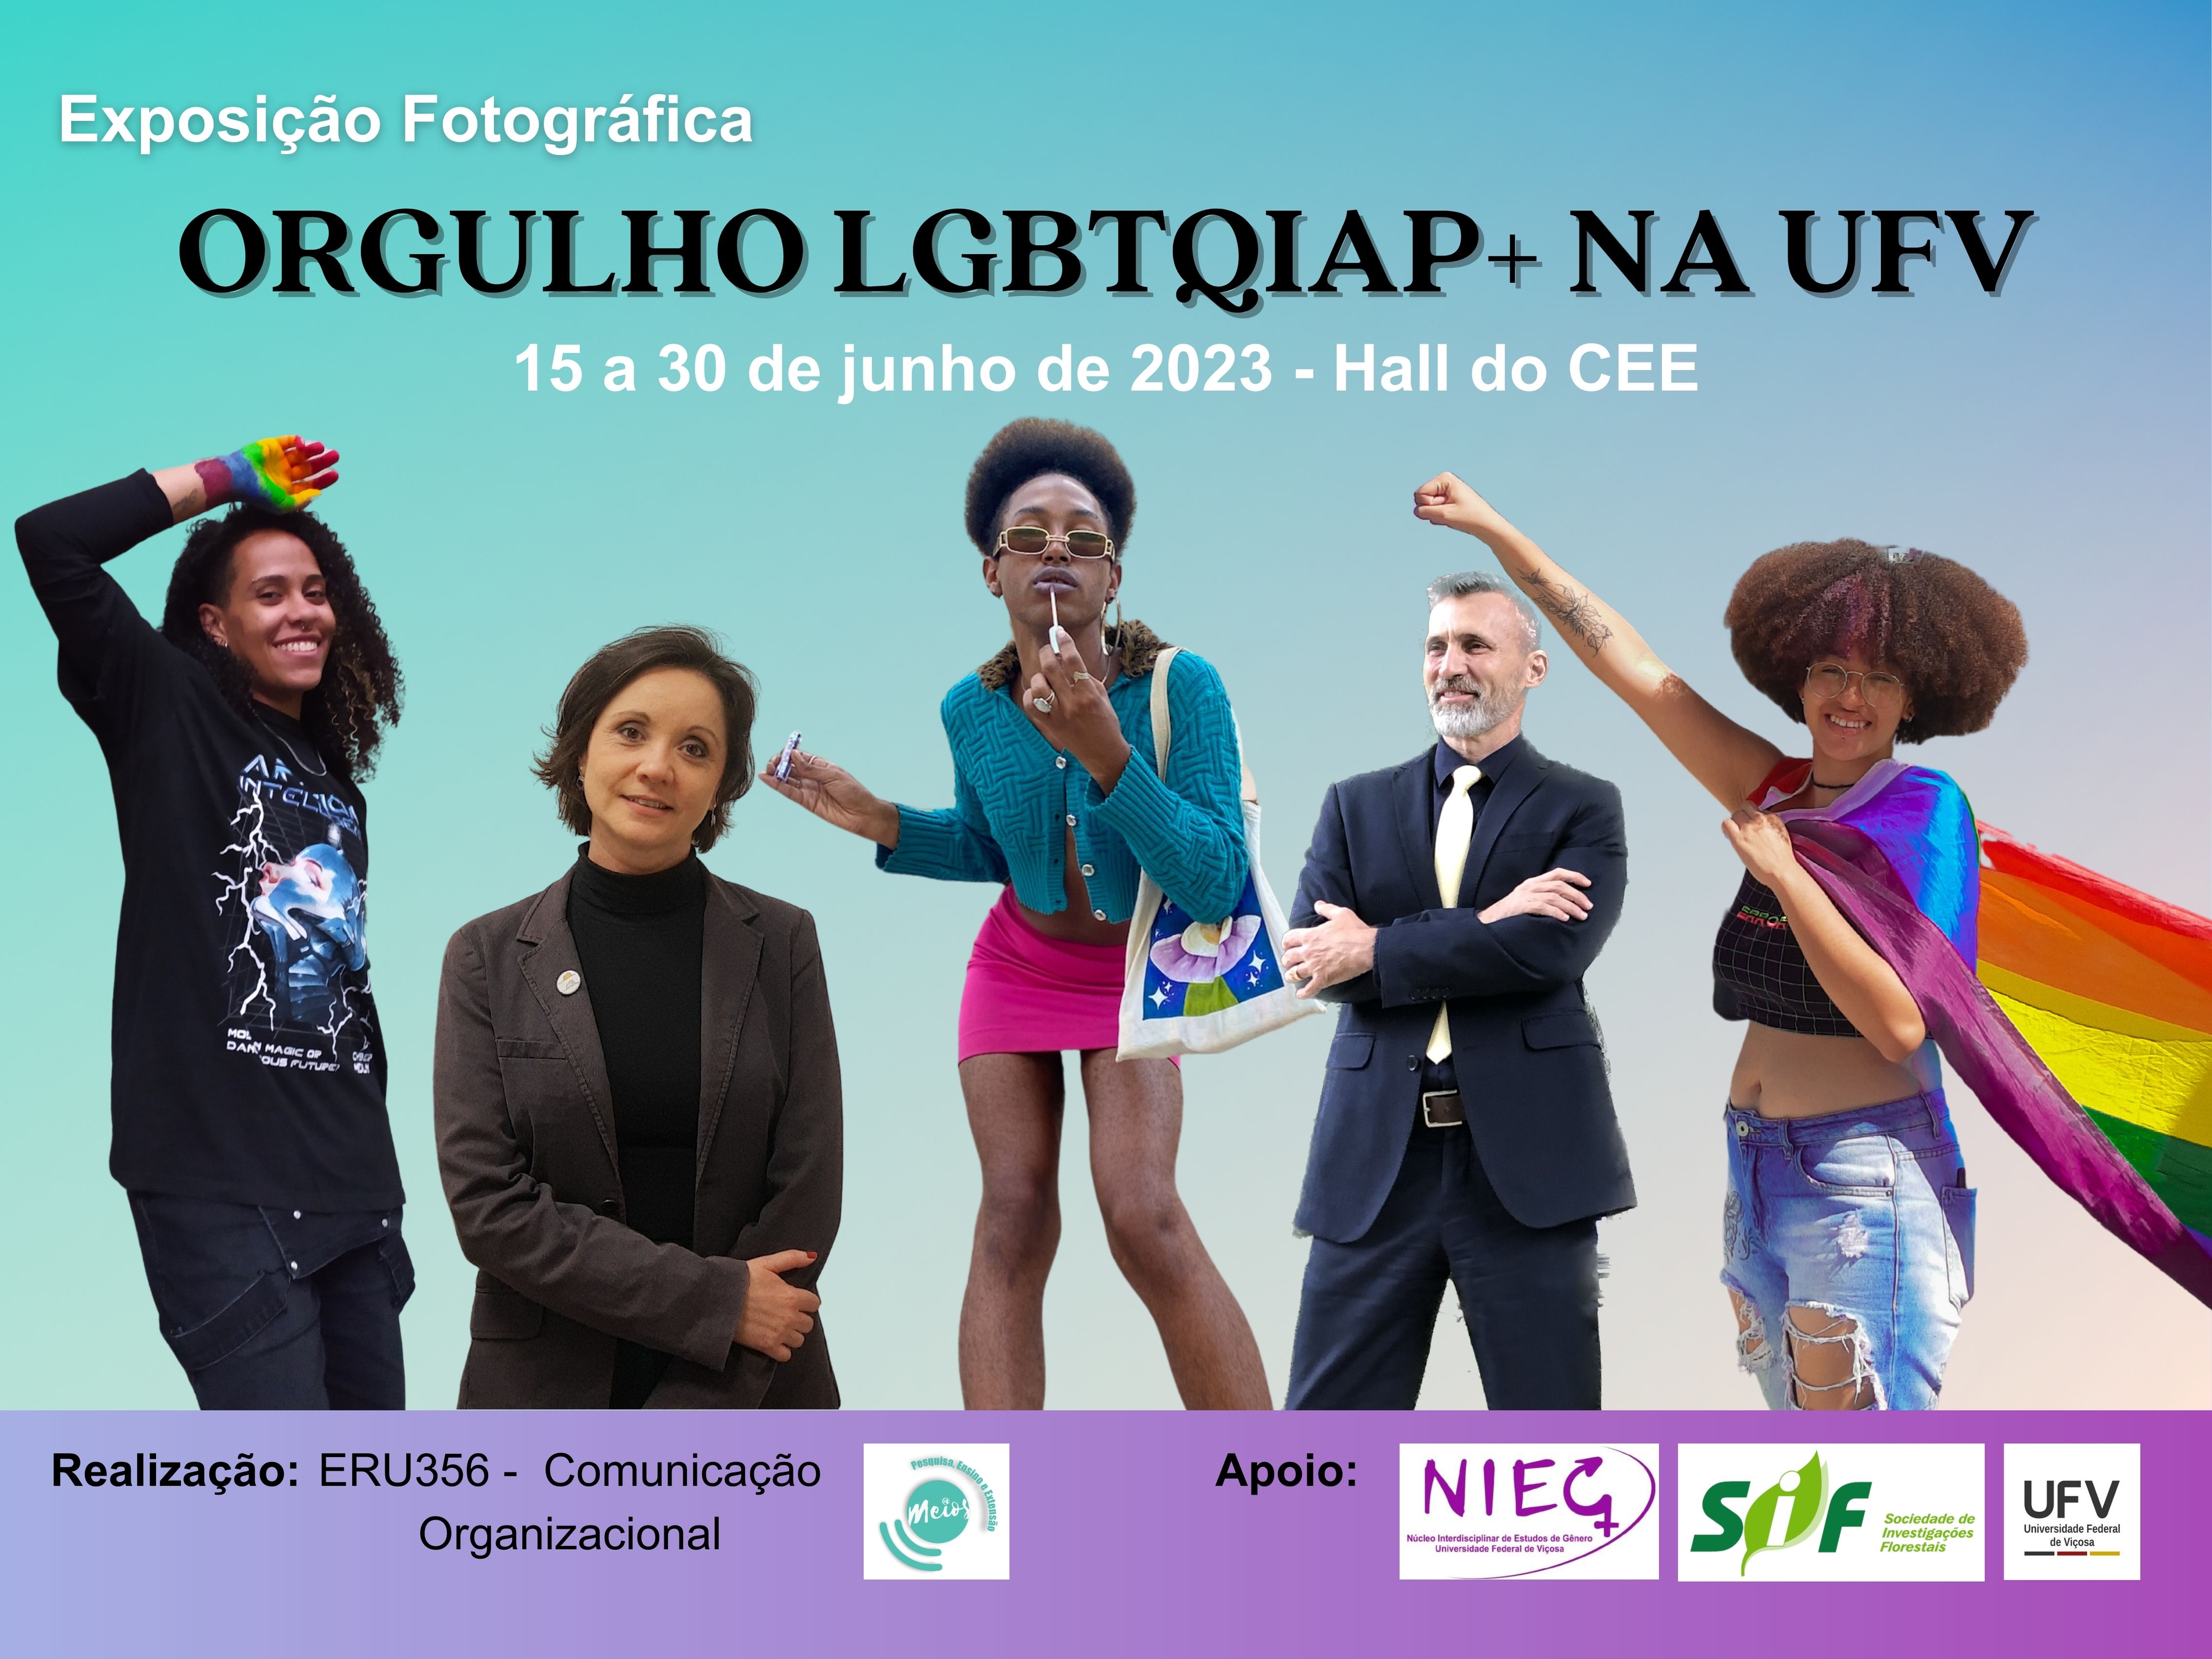 Montagem com fotos de 5 membros LGBTQIAP+ da comunidade acadêmica da UFV, entre discentes e servidores. 